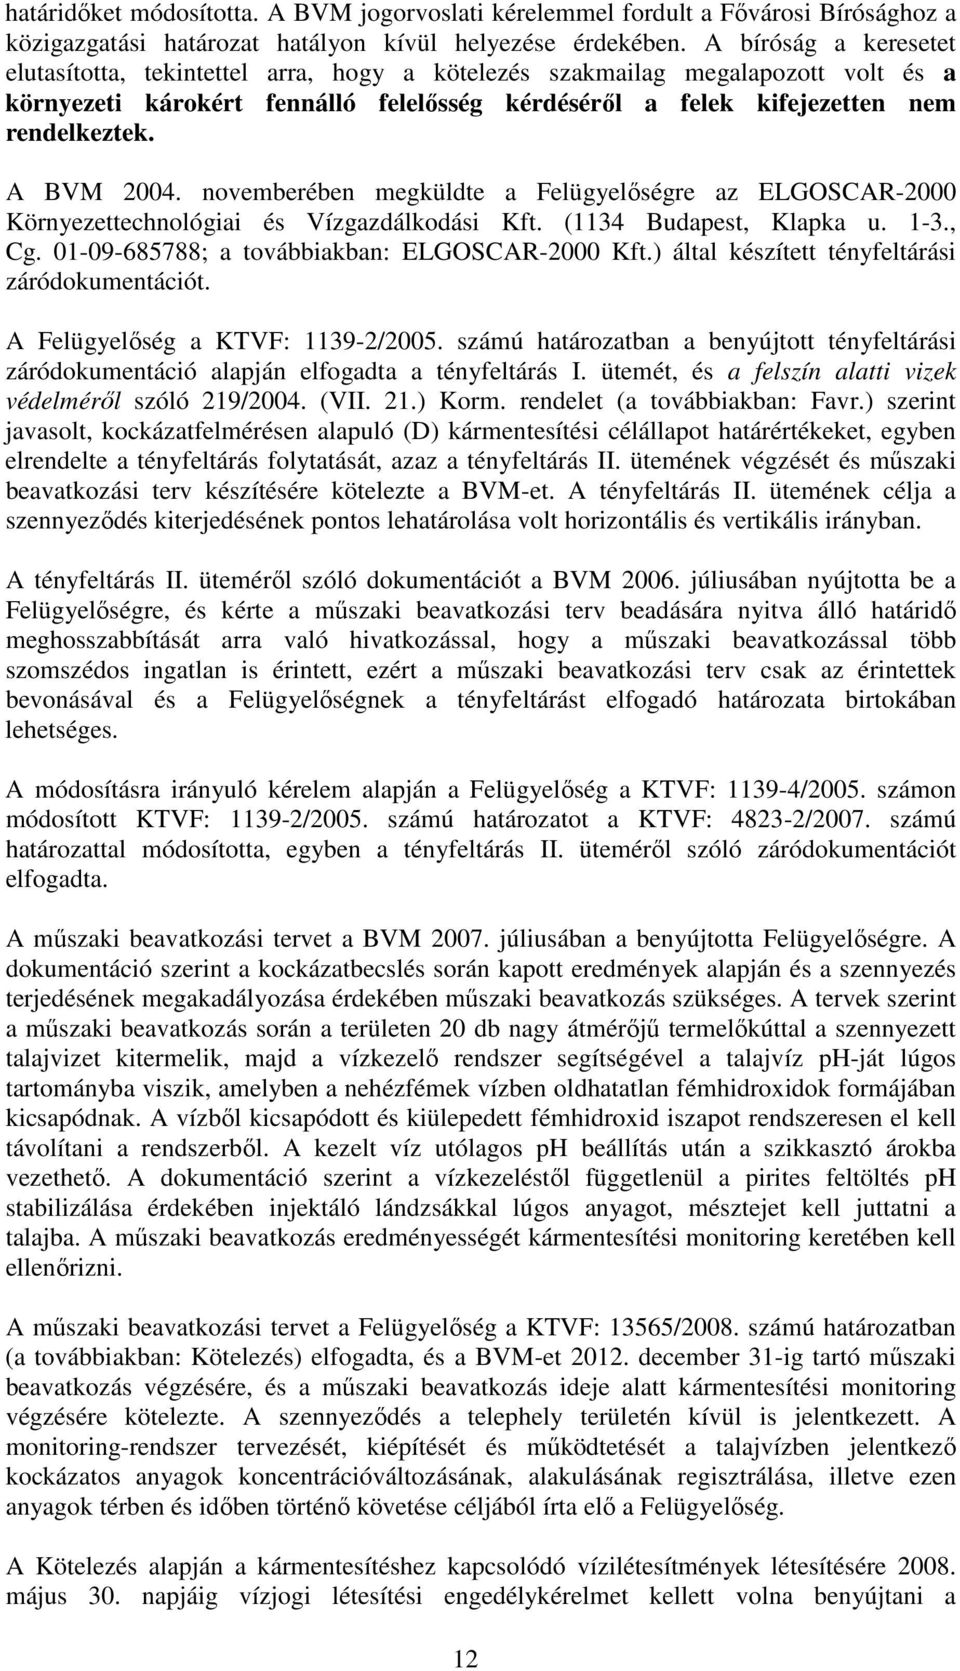 A BVM 2004. novemberében megküldte a Felügyelőségre az ELGOSCAR-2000 Környezettechnológiai és Vízgazdálkodási Kft. (1134 Budapest, Klapka u. 1-3., Cg. 01-09-685788; a továbbiakban: ELGOSCAR-2000 Kft.